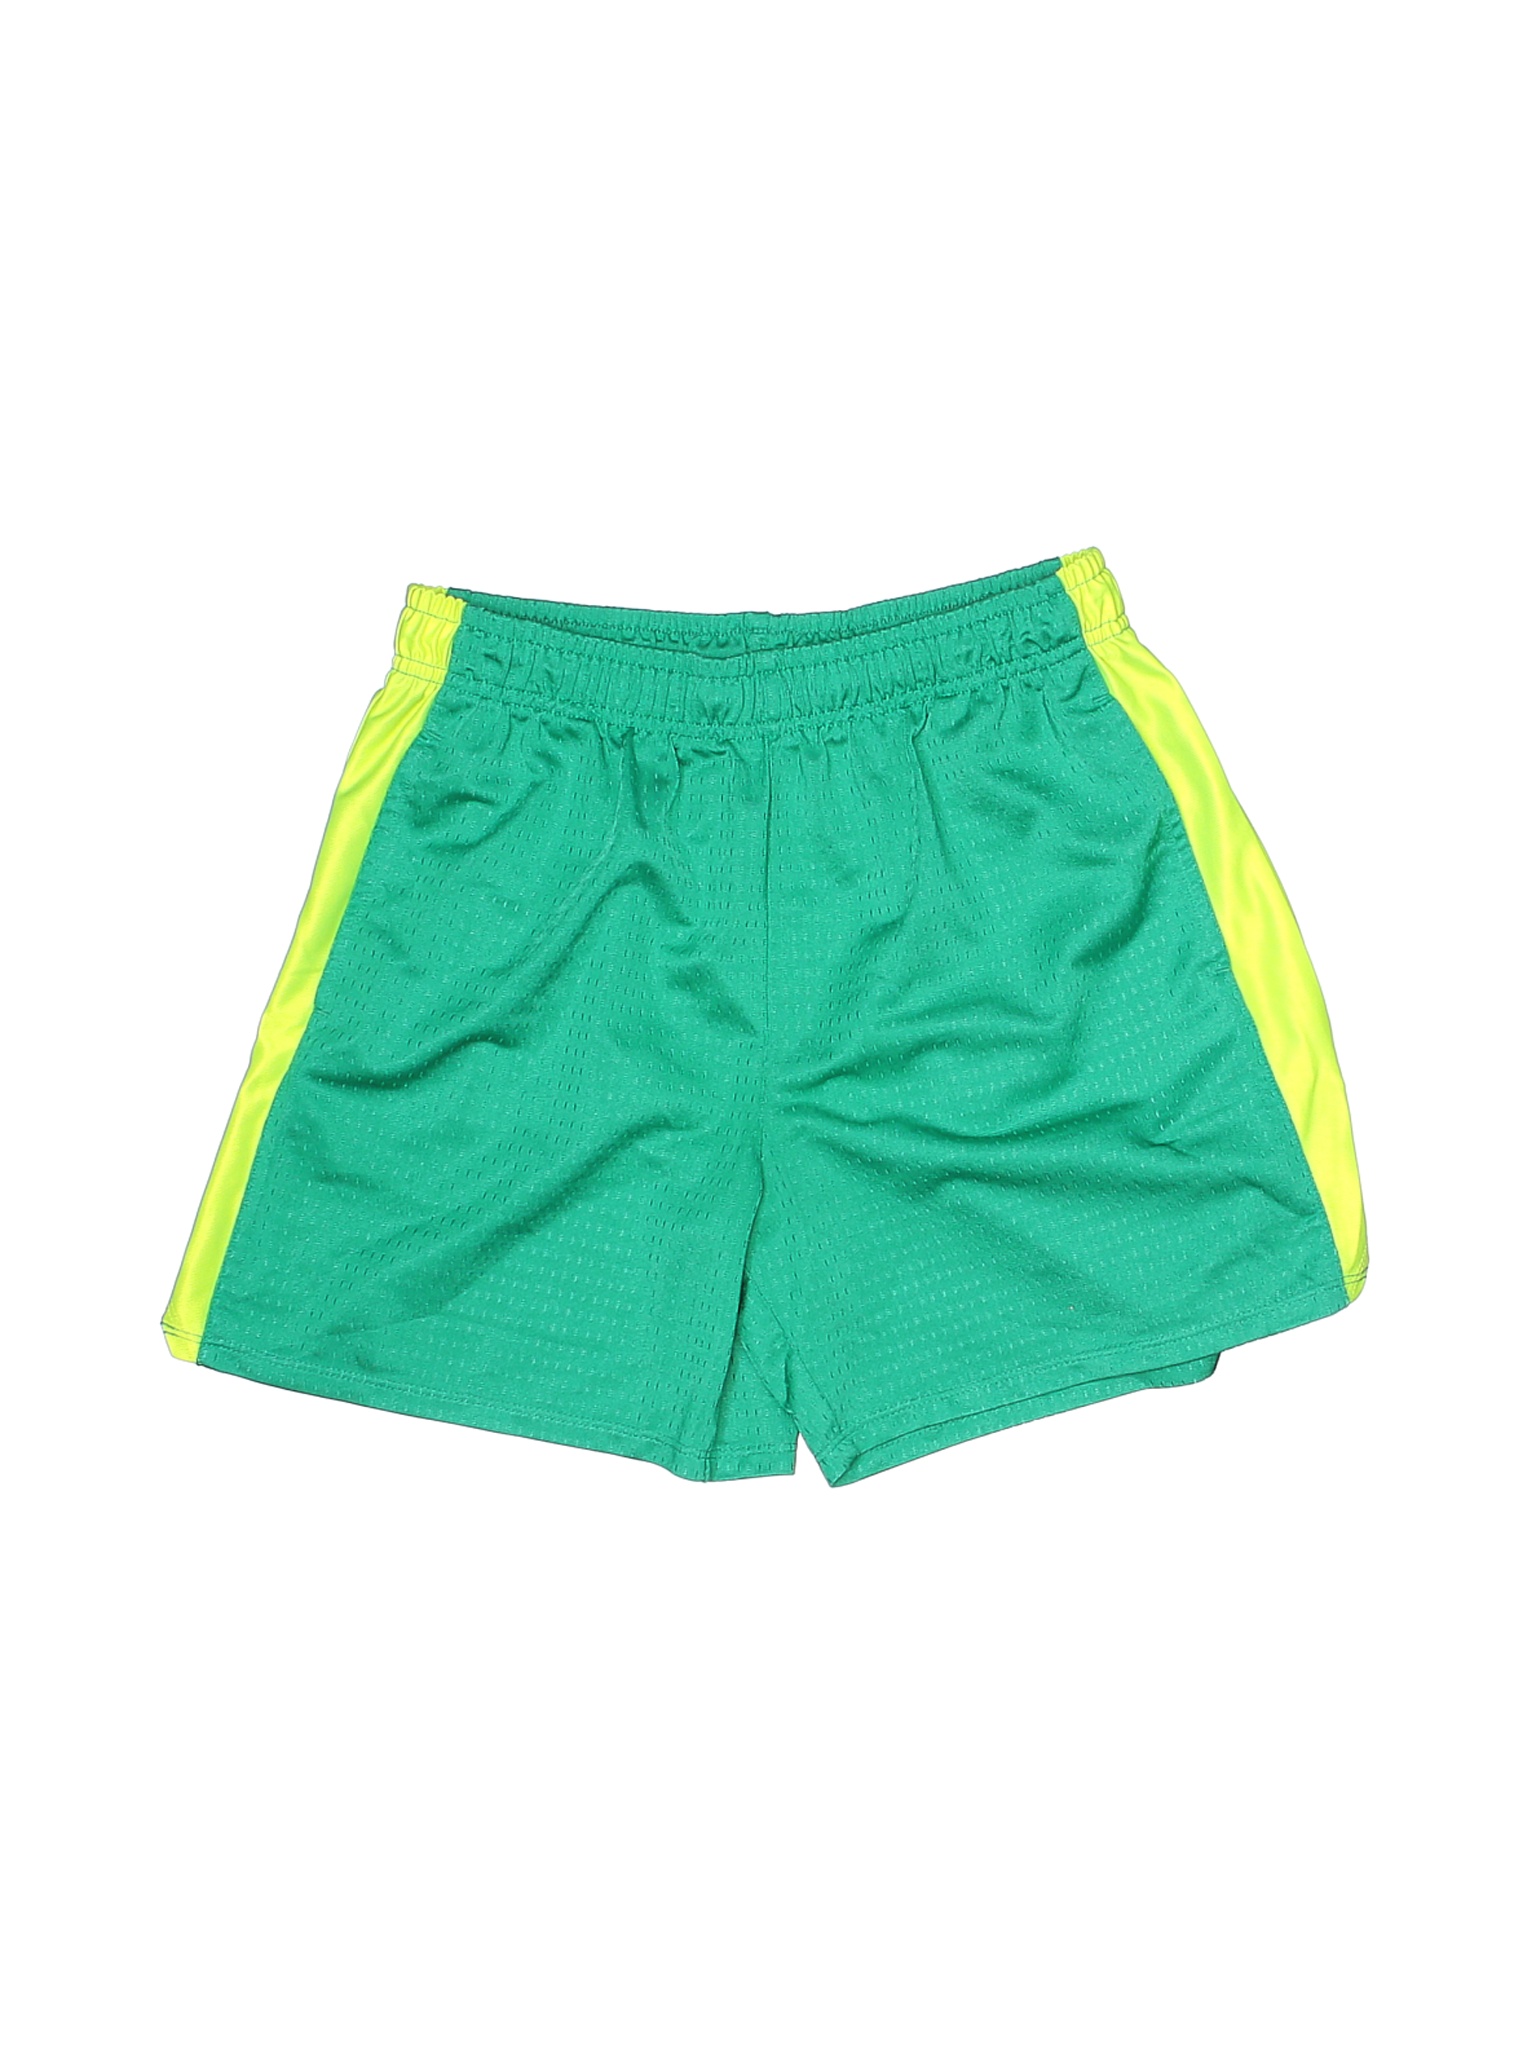 Energy Zone Girls Green Athletic Shorts 14 | eBay